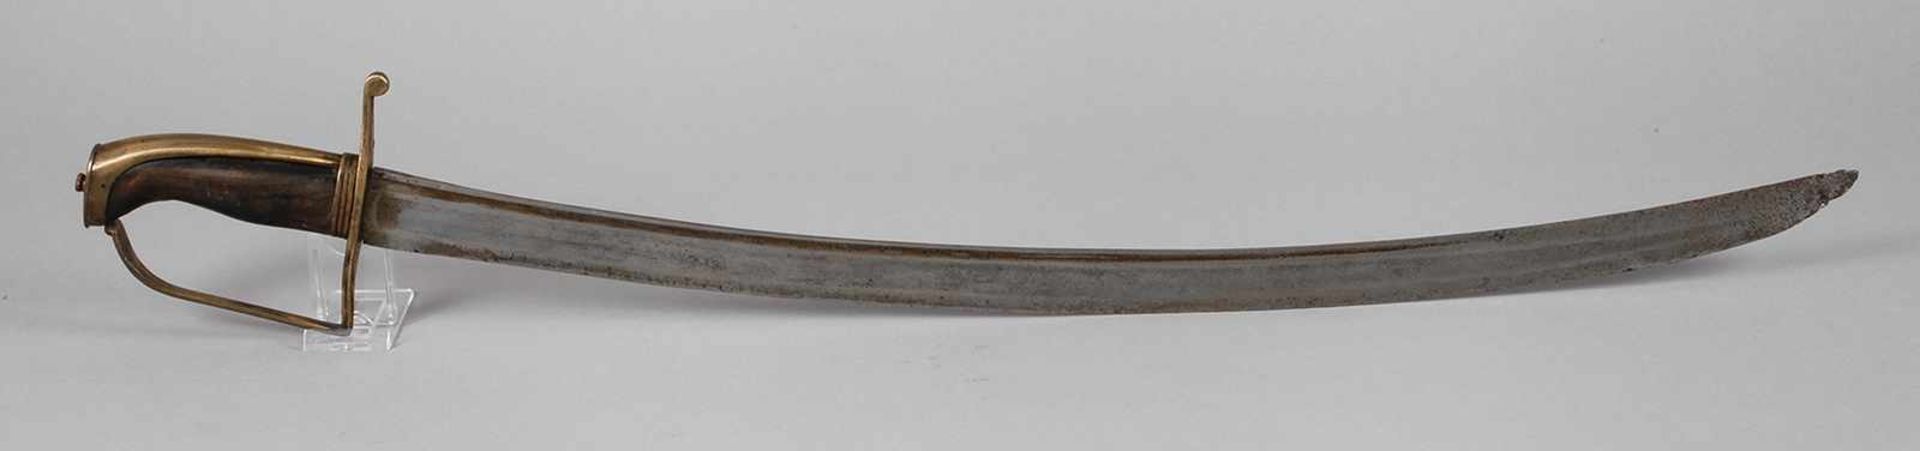 Kürassiersäbeldeutsch, um 1780, breite, geschwungene Keilklinge mit breiter und schmaler Kehle zur